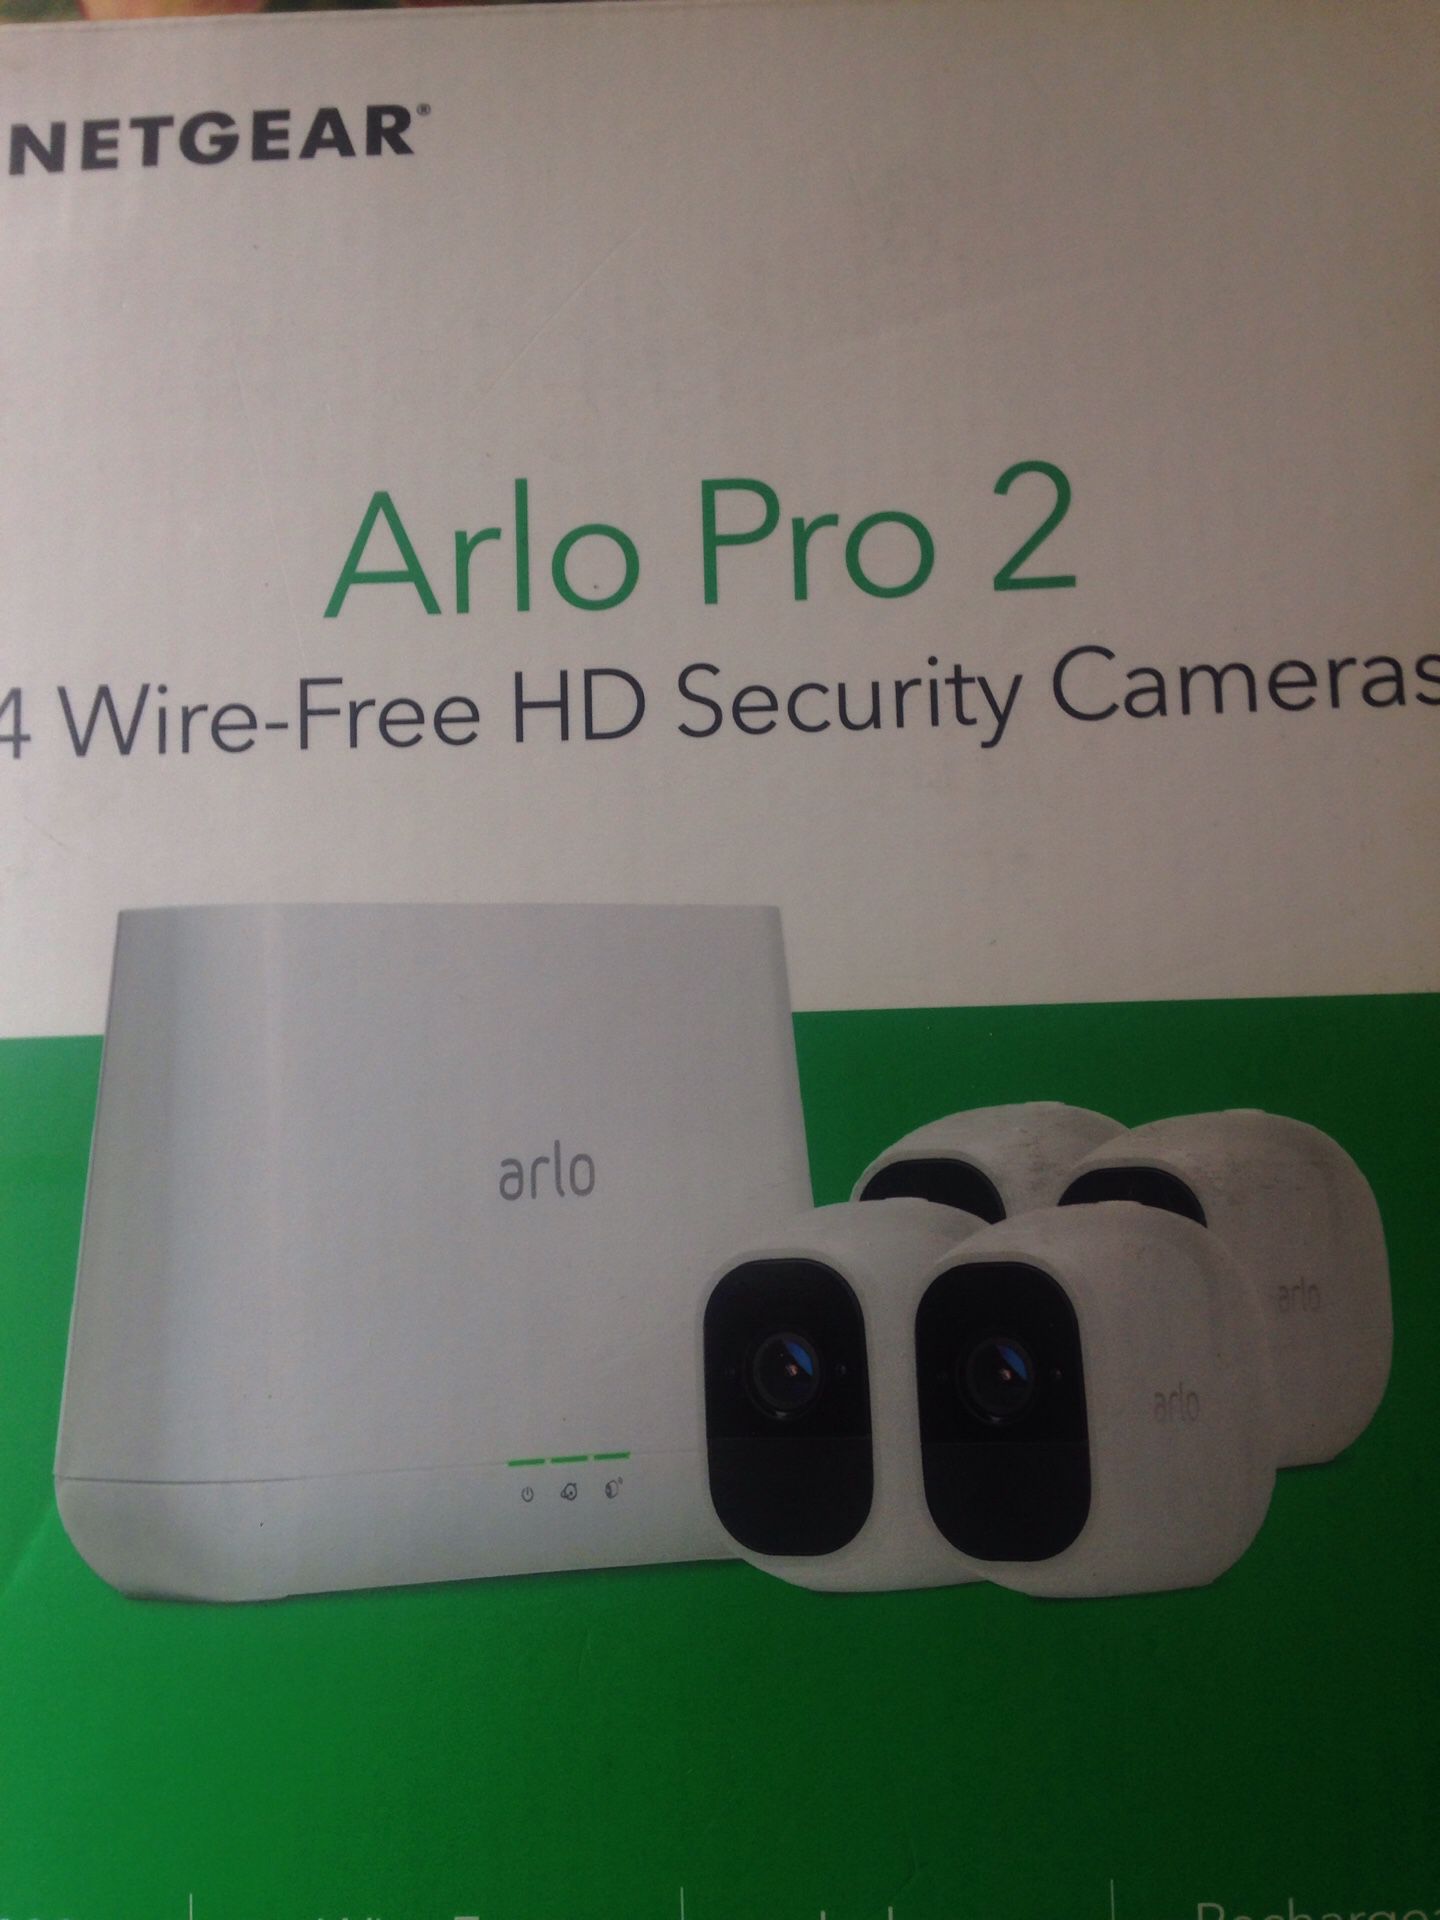 Arlo Pro 2 4 wire free HD security cameras